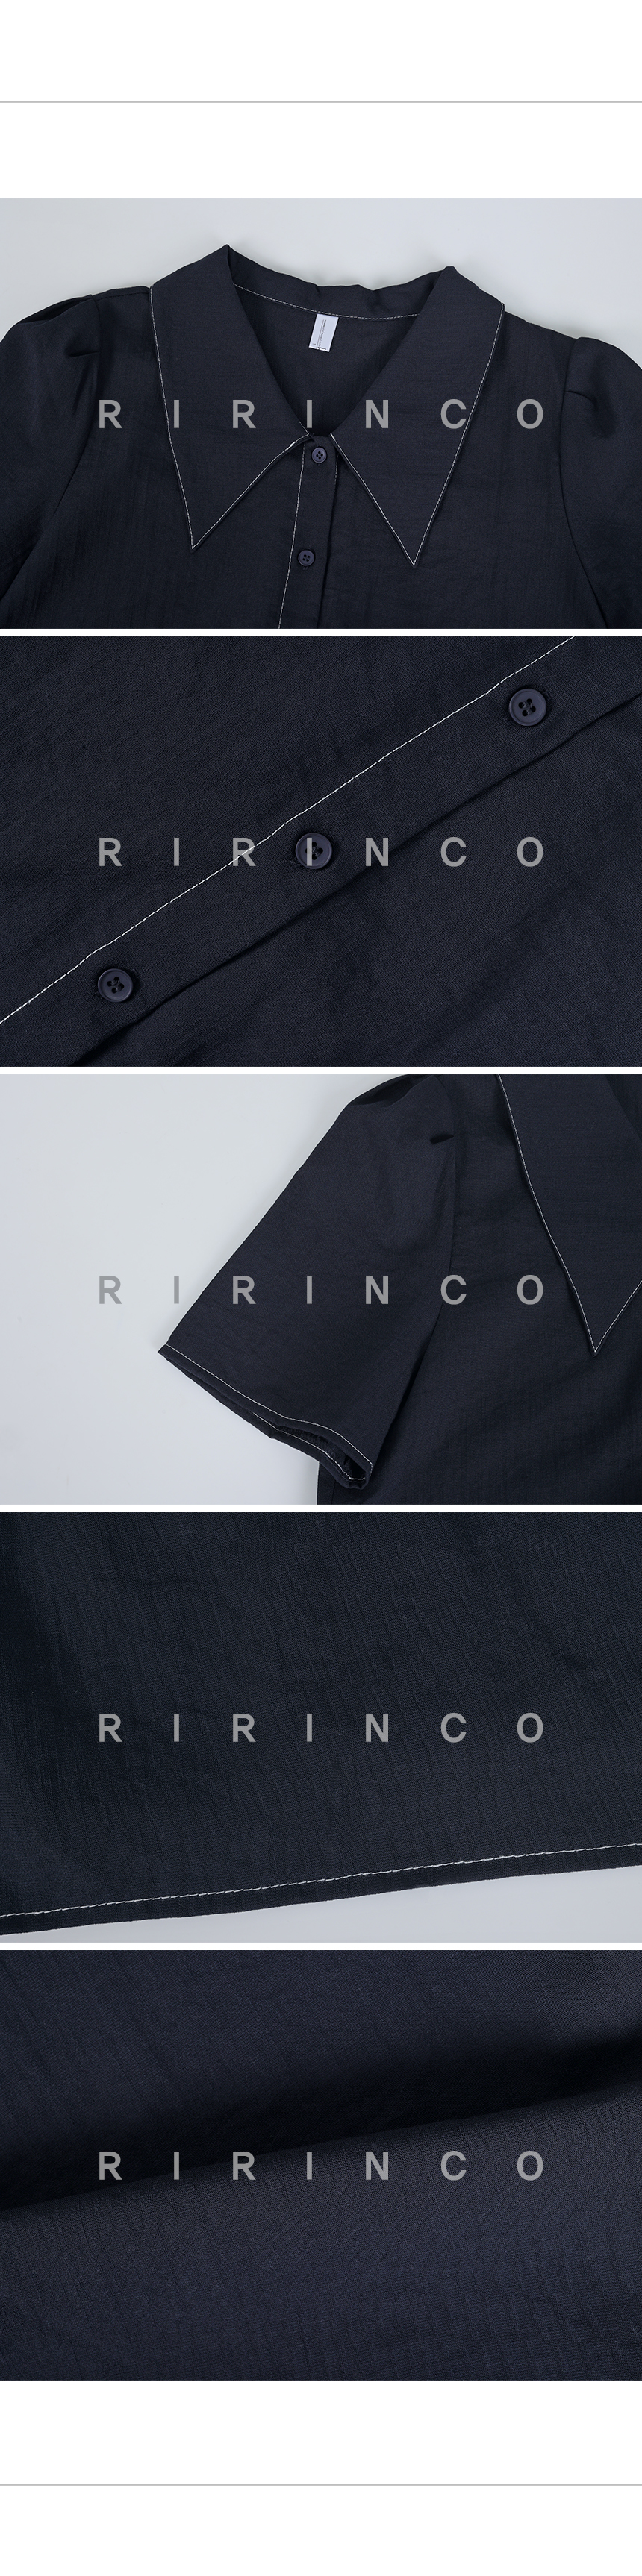 RIRINCO 配色ステッチビッグカラー半袖ブラウス